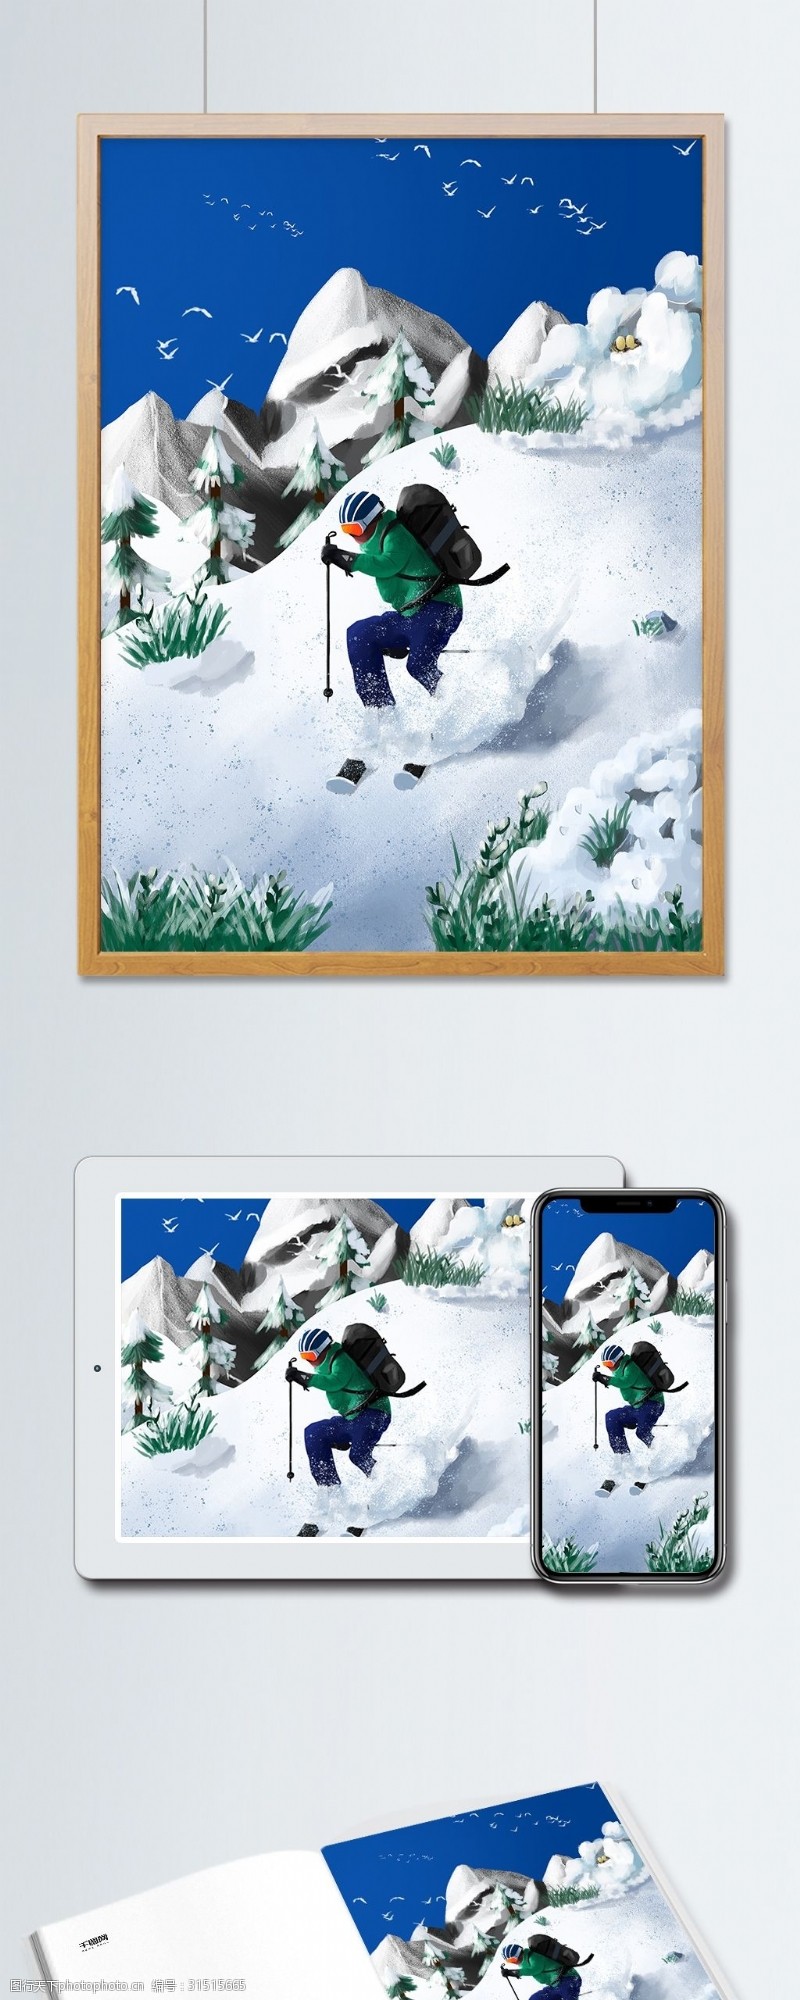 滑雪者晴空雪山极限滑雪写实插画